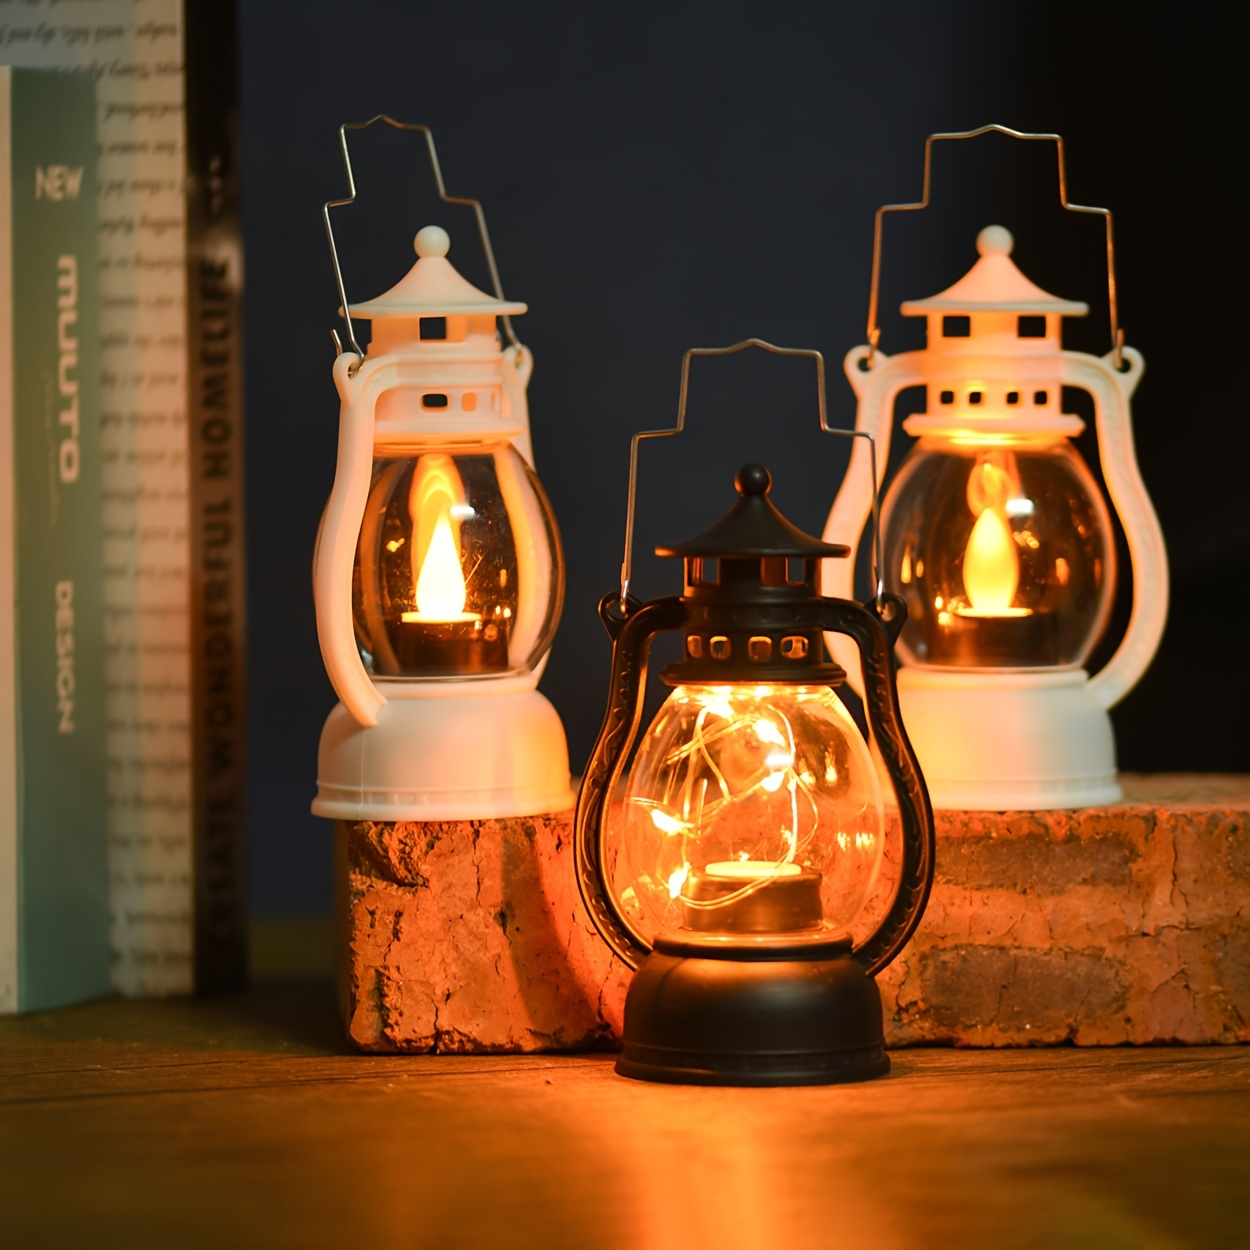 LAC Guirlande Led à Pile 5m 50 LEDs -Petite Guirlandes Lumineuses